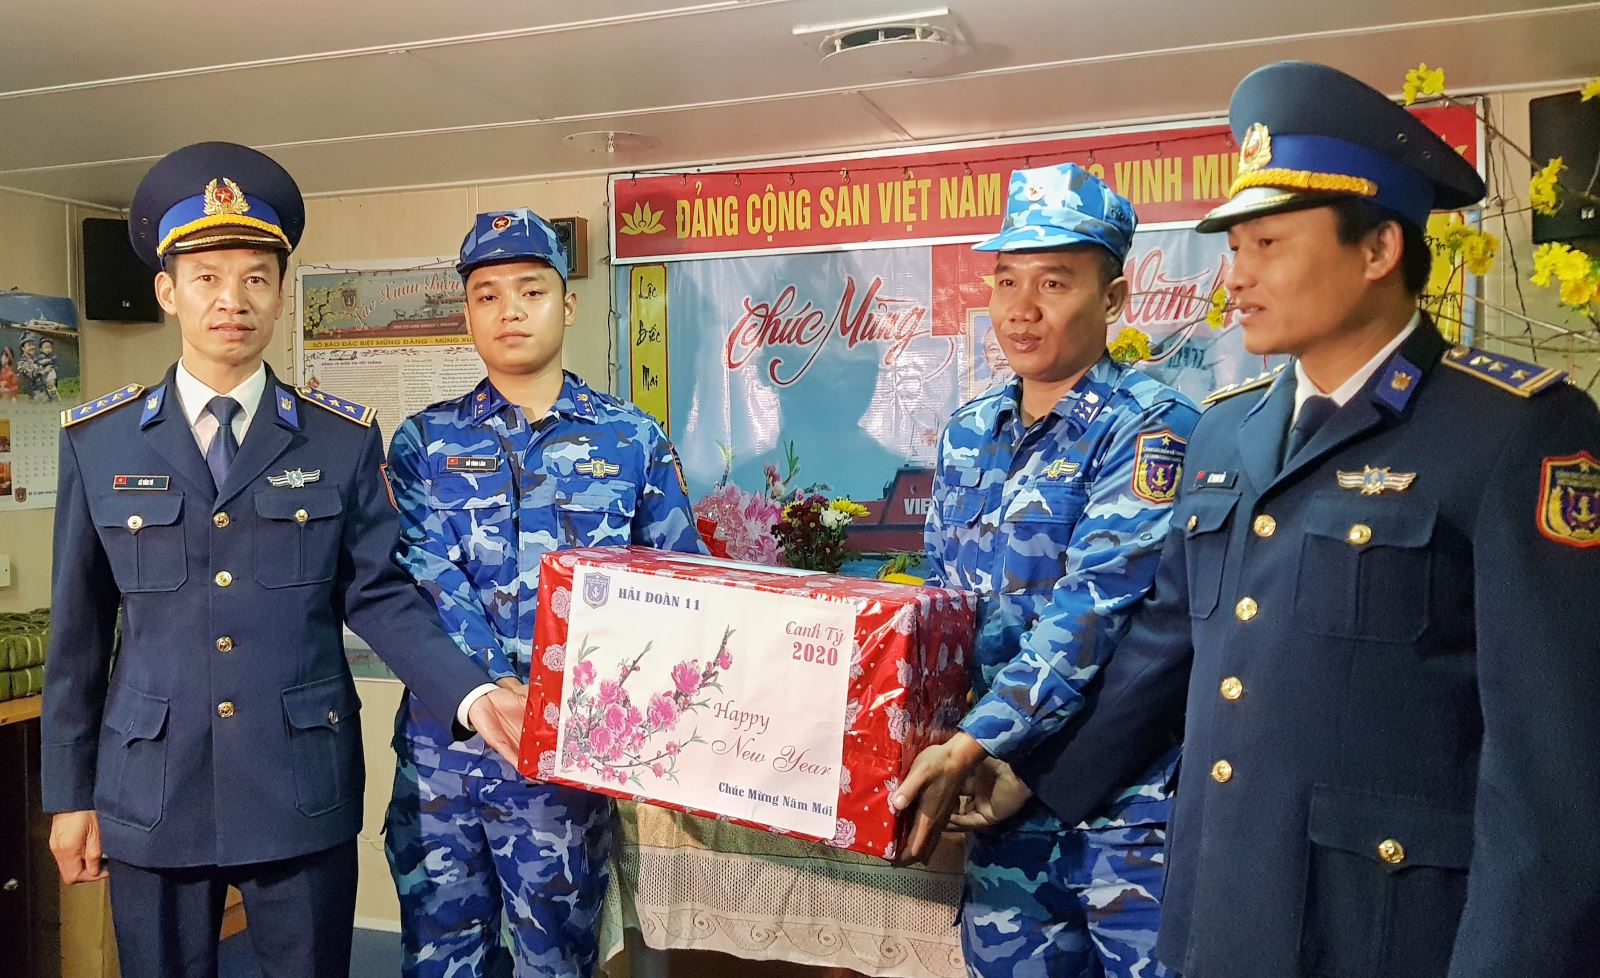  Hải đoàn trưởng Hải đoàn 11, Thượng tá Lê Thanh Hải (Ngoài cùng bên phải) tặng quà cho các chiến sĩ tàu 9004 lên đường thực hiện nhiệm vụ.